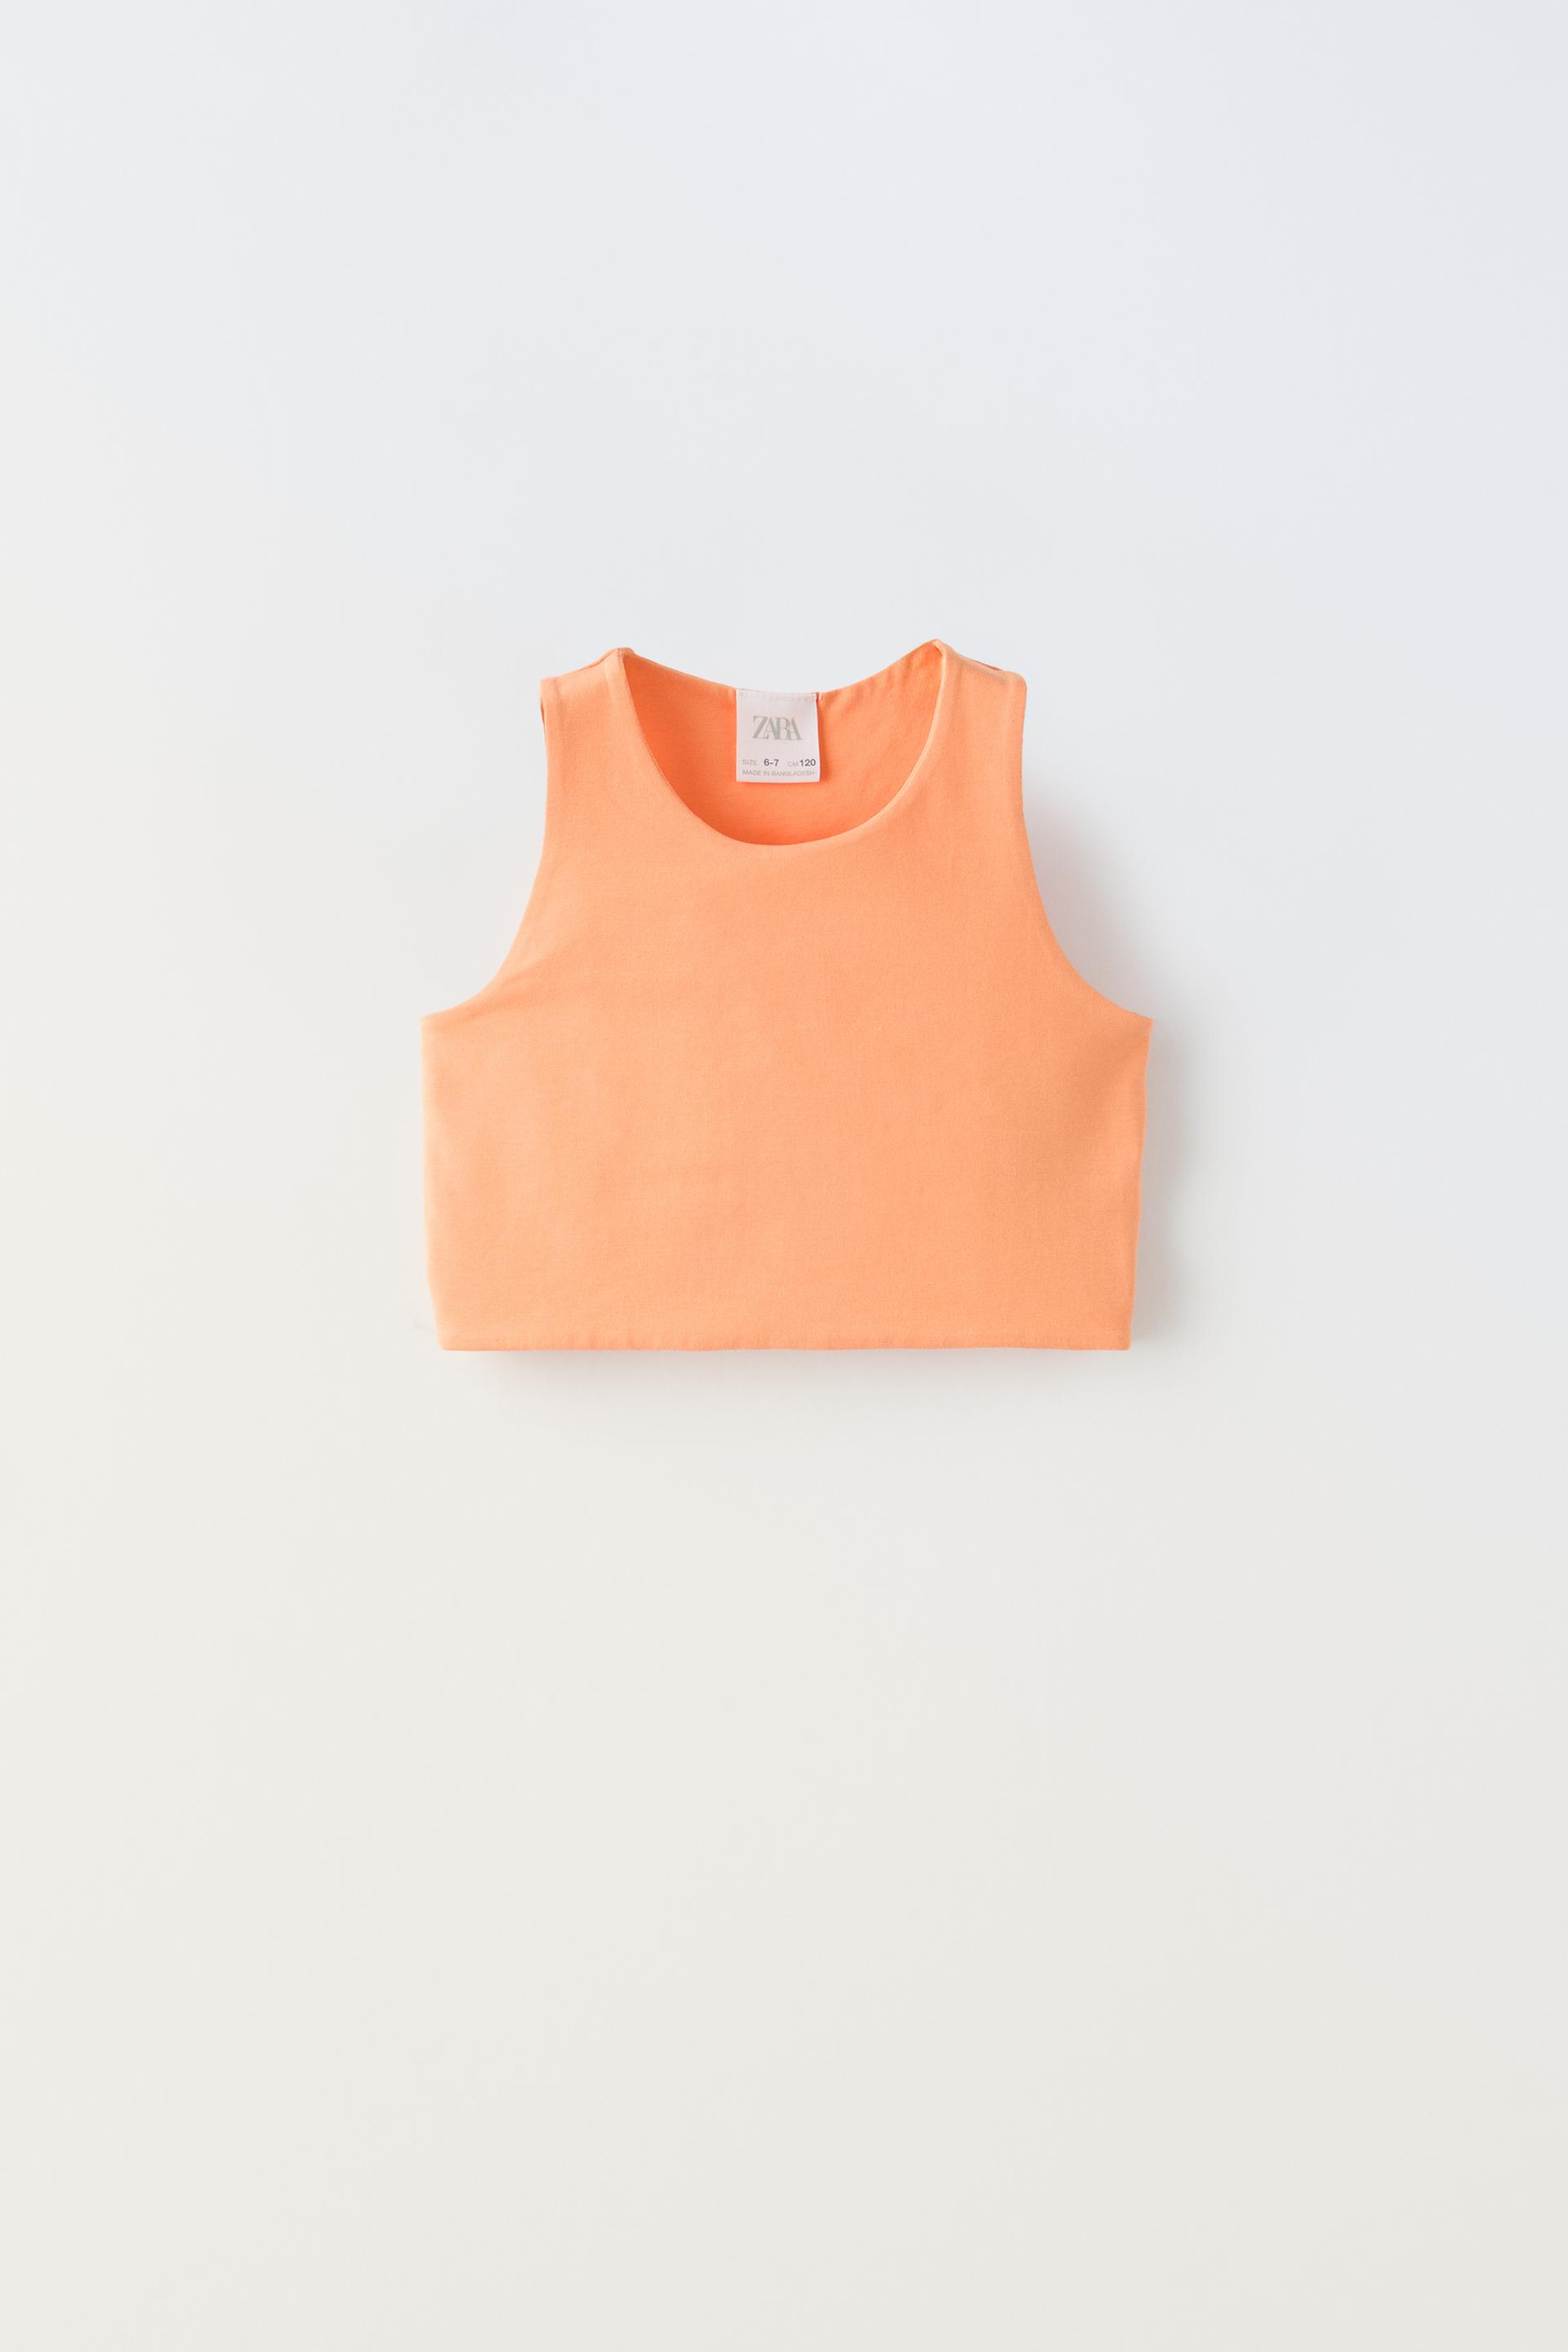 Топ Zara Sleeveless Crop, оранжевый футболка женская оверсайз с графическим принтом модный топ без рукавов бандажный топ с круглым вырезом уличная одежда 2022